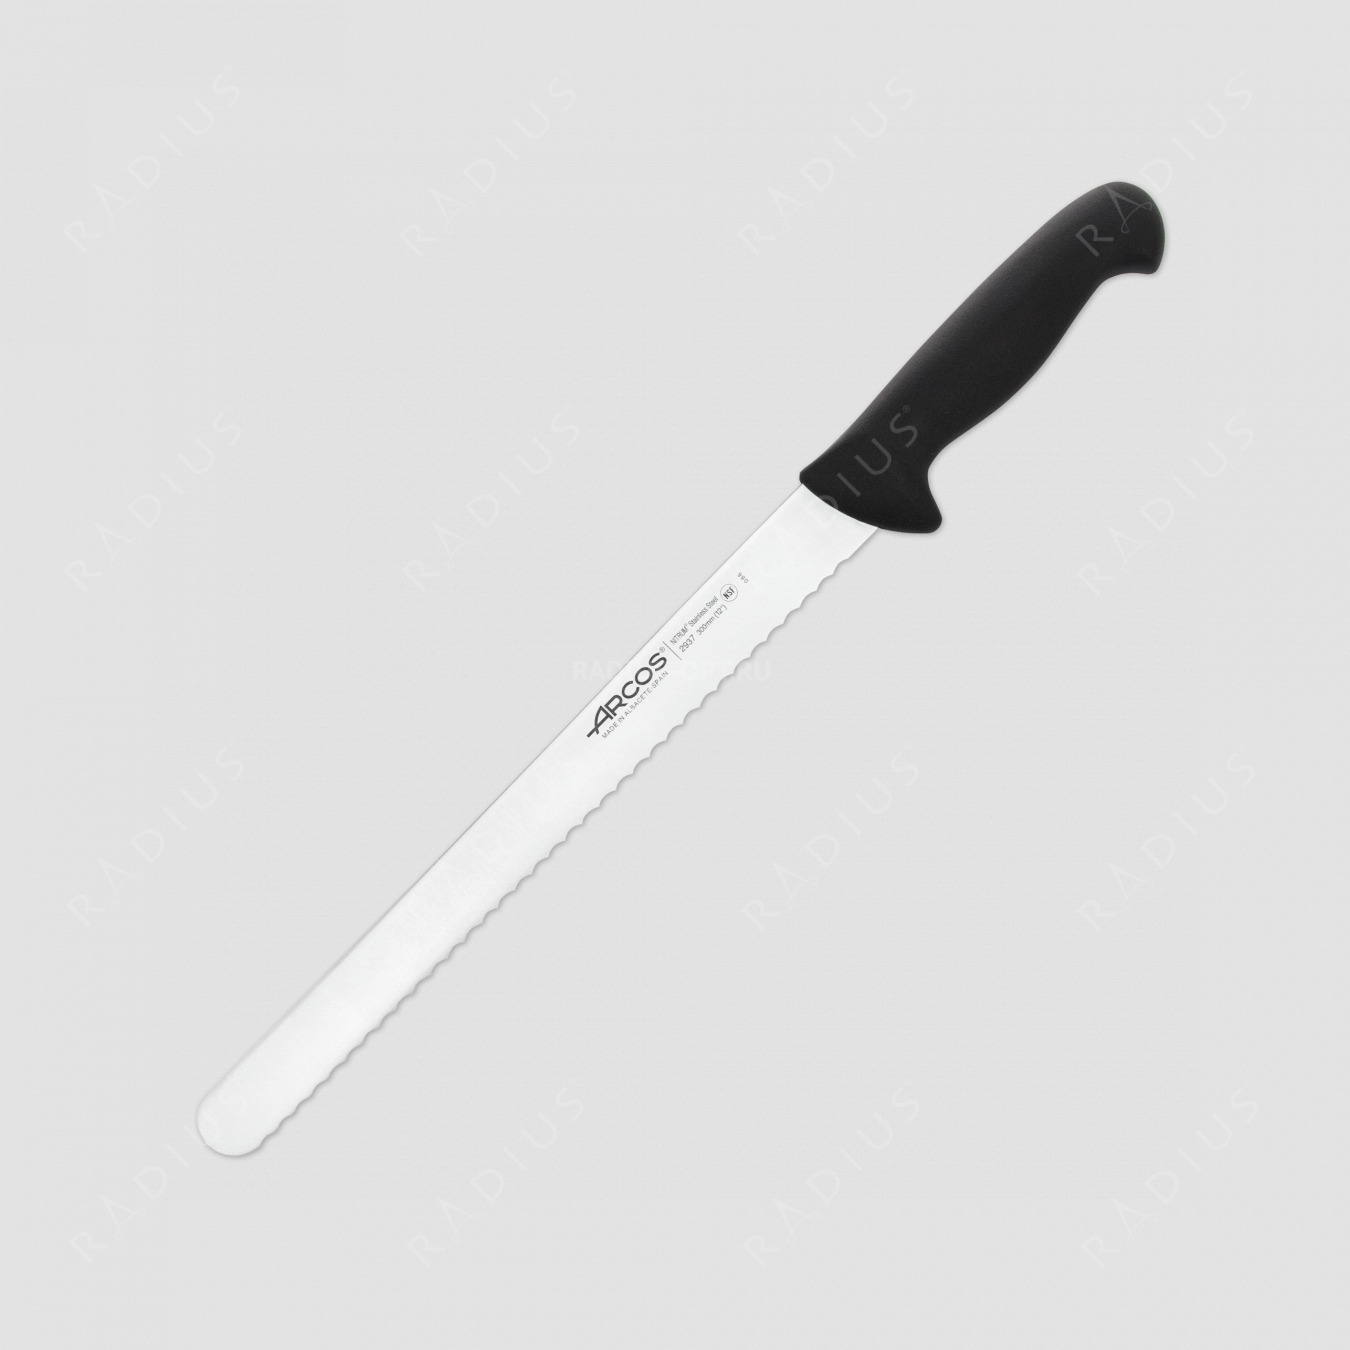 Нож кухонный для кондитерских изделий 30 см, рукоять - черная, серия 2900, ARCOS, Испания